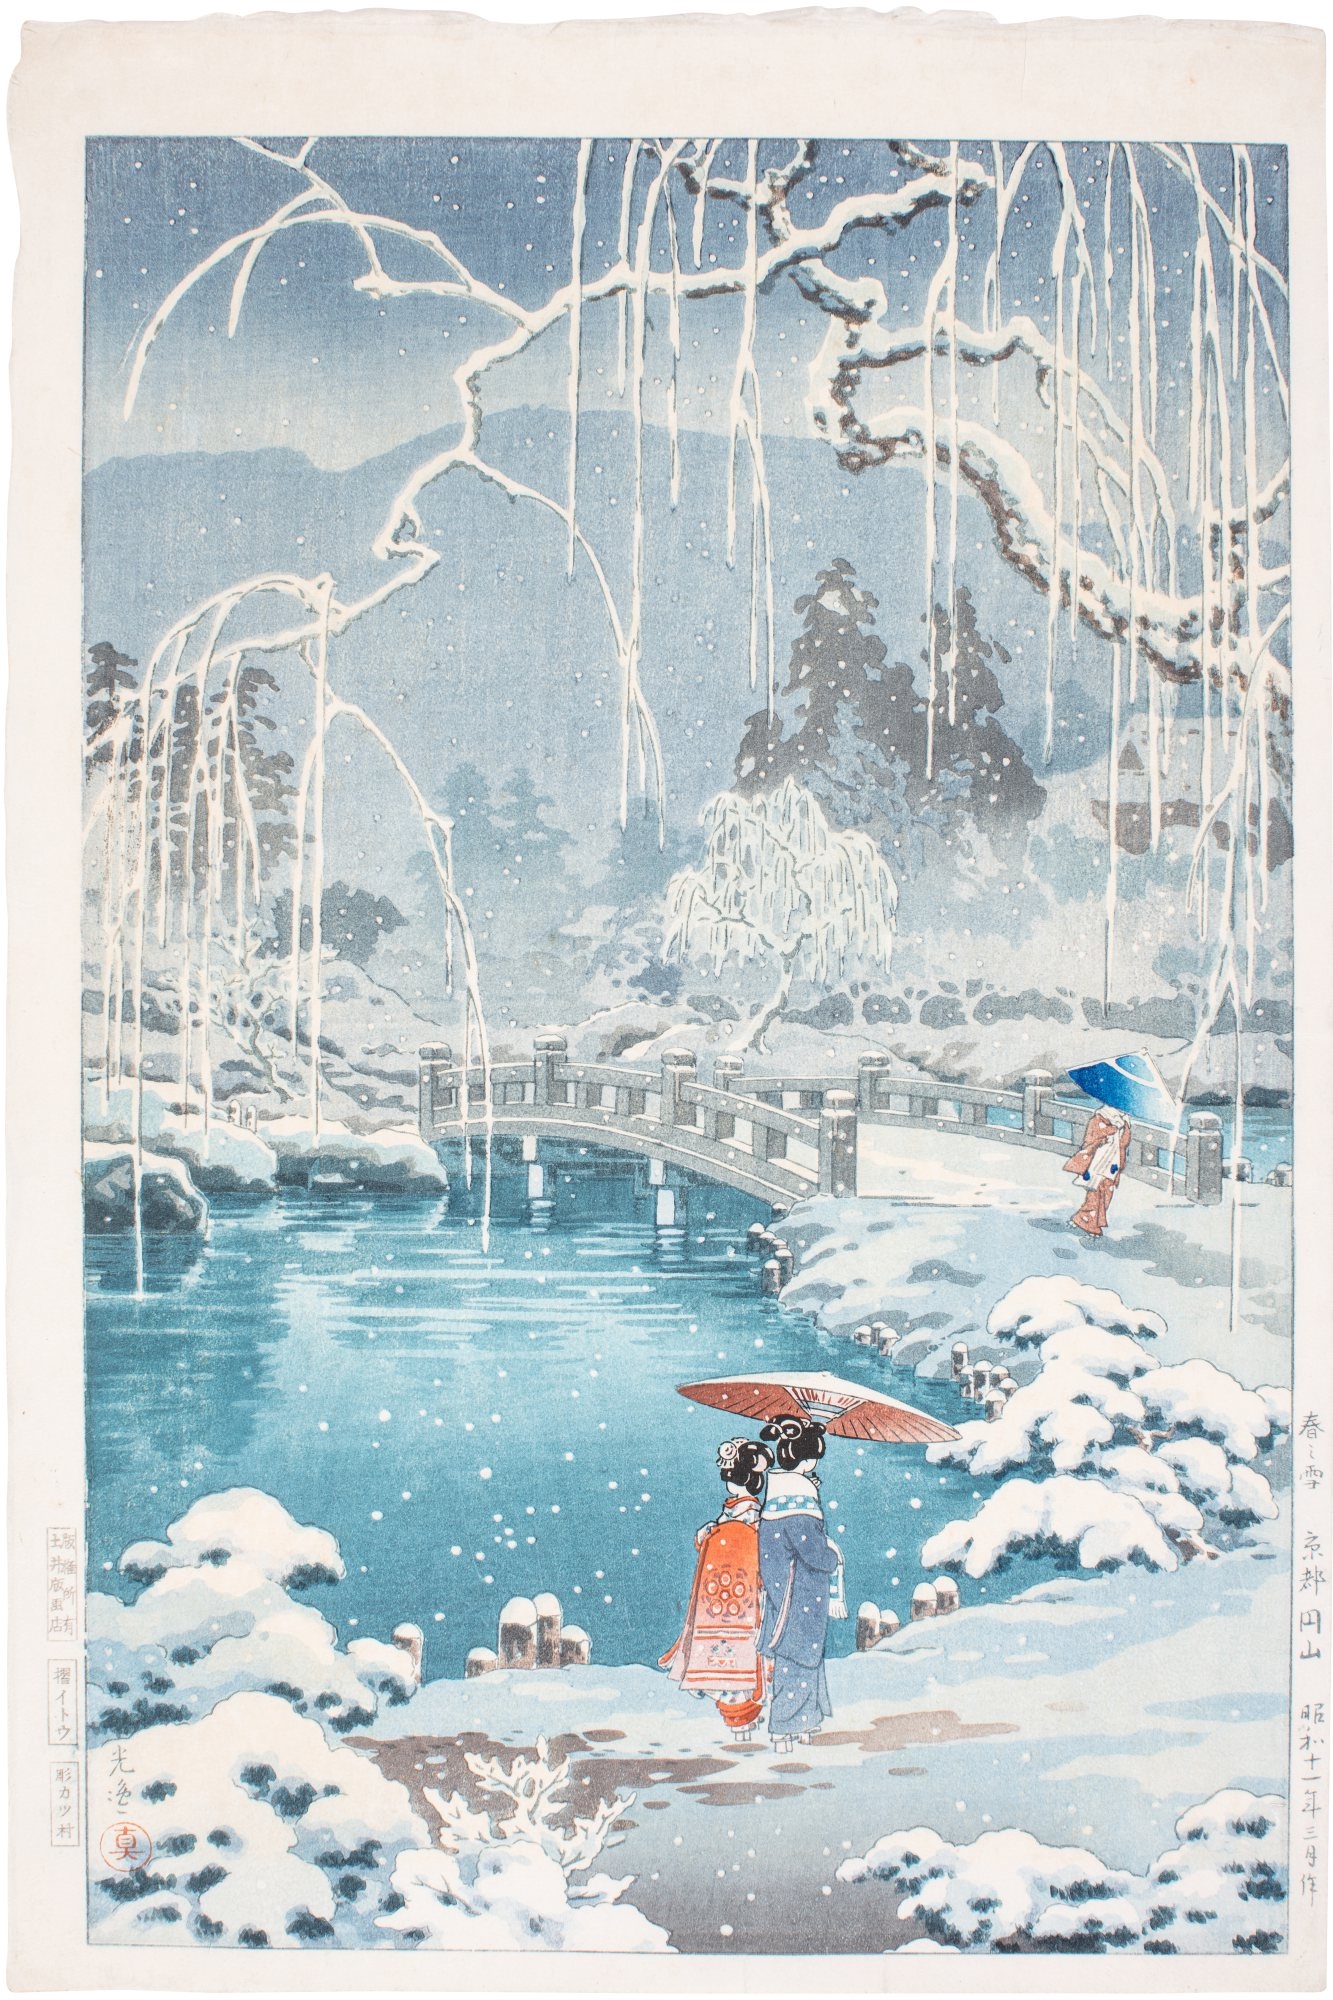 Spring Snow at Maruyama, Kyoto ( Haru no yuki, Kyoto Maruyama ) by Tsuchiya Koitsu, March, 1936